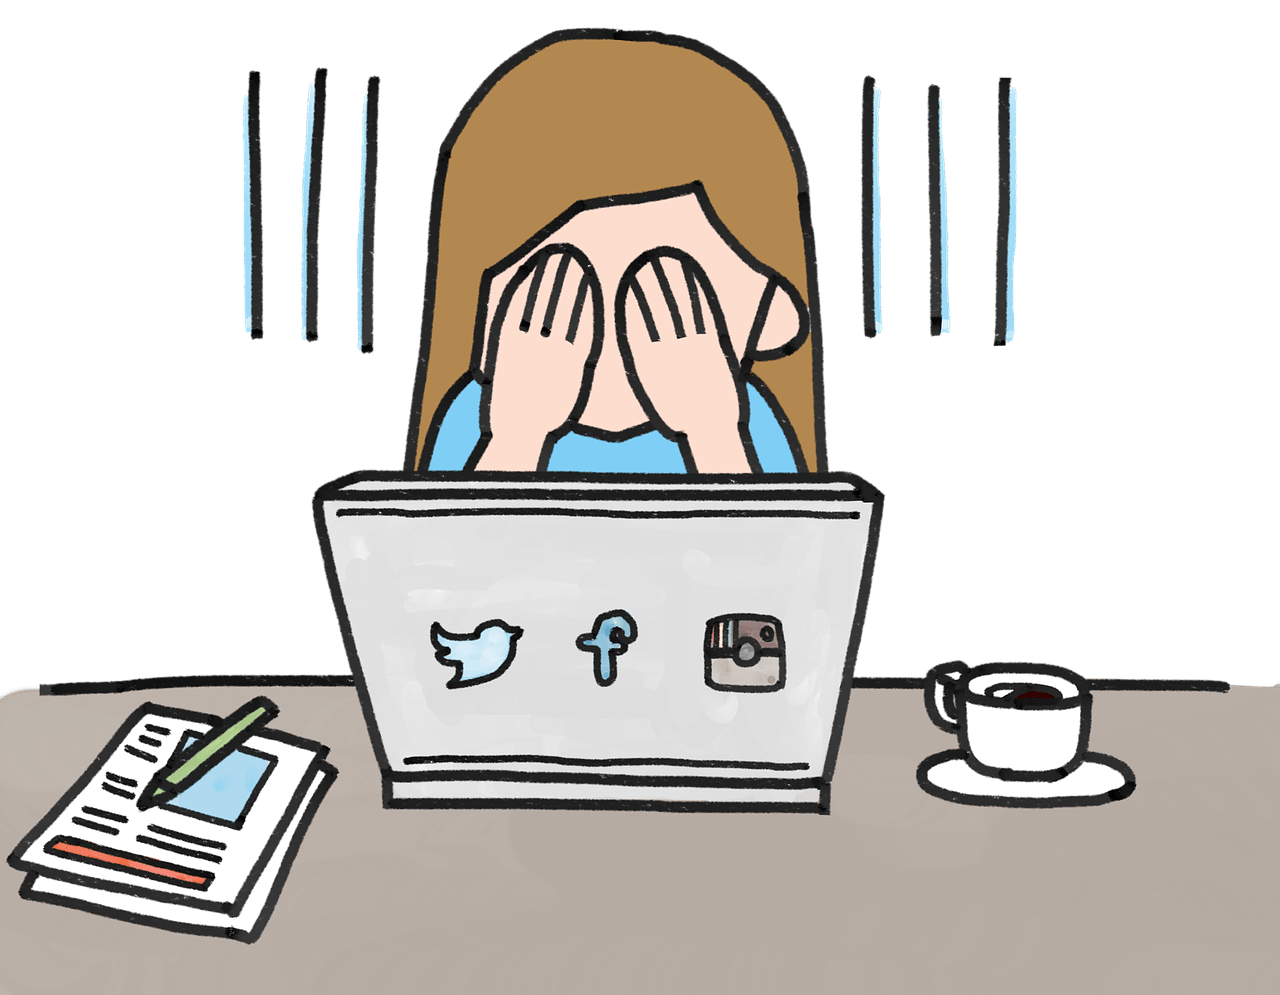 social-media-frustration-illustration